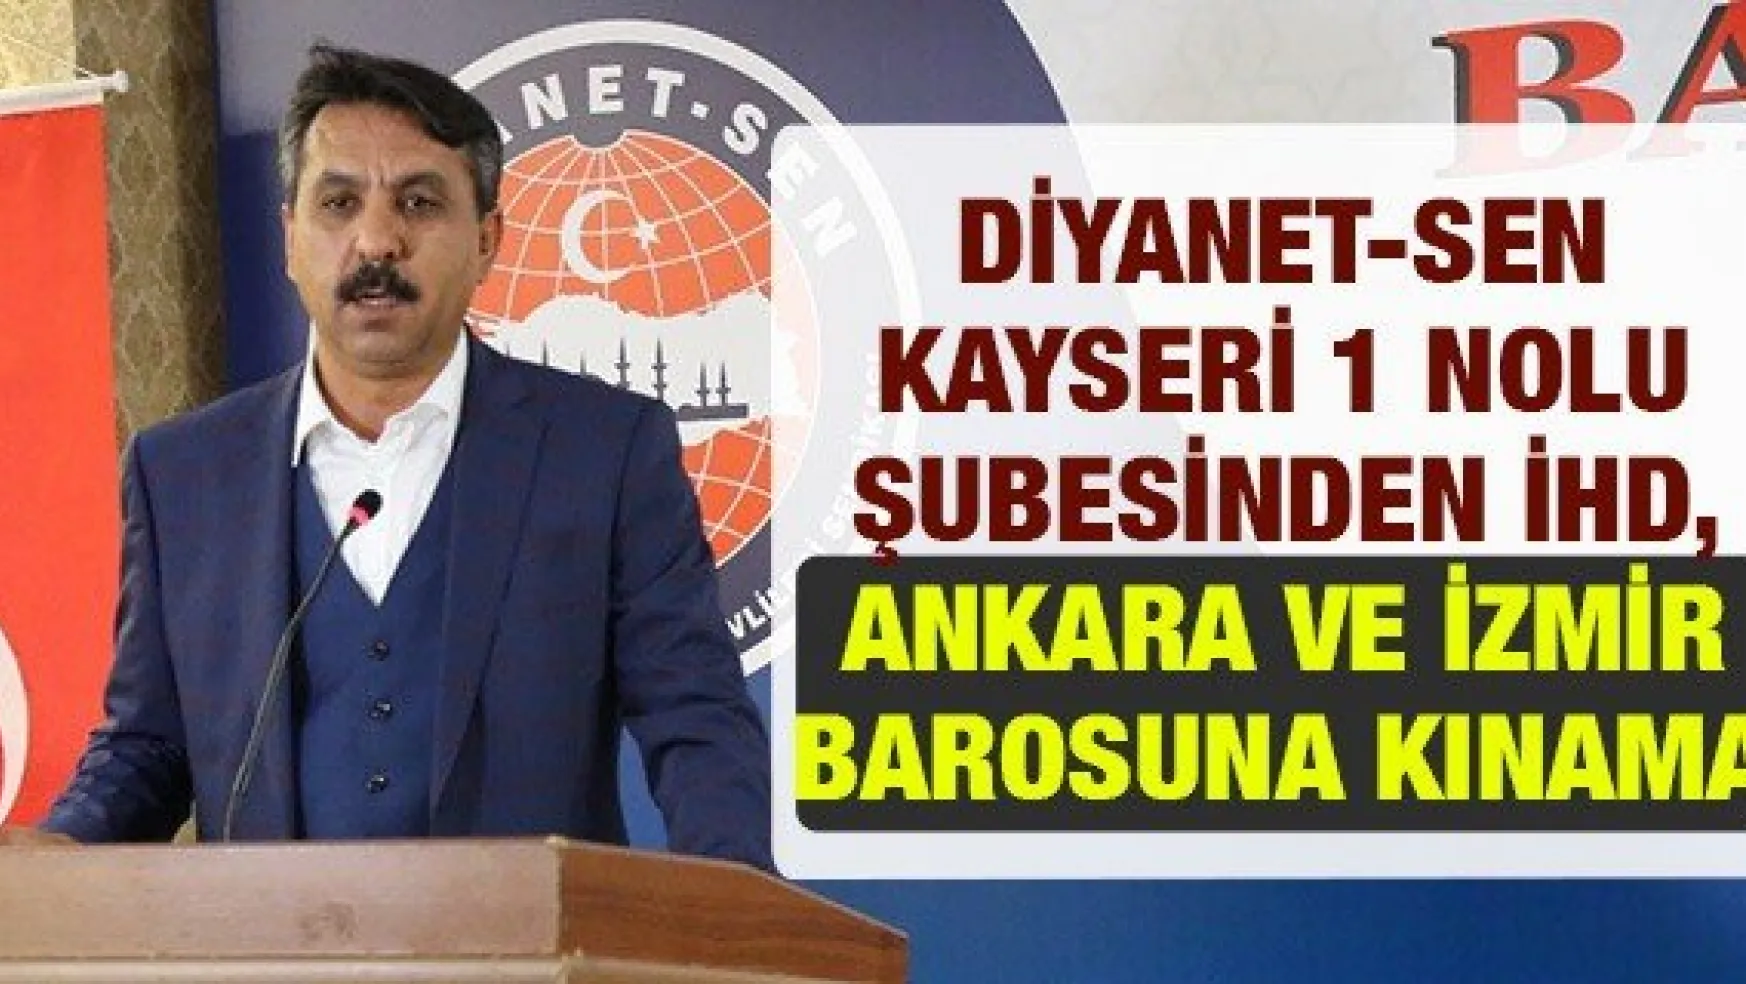 Diyanet-Sen Kayseri 1 nolu Şubesinden İHD, Ankara ve İzmir Barosuna kınama